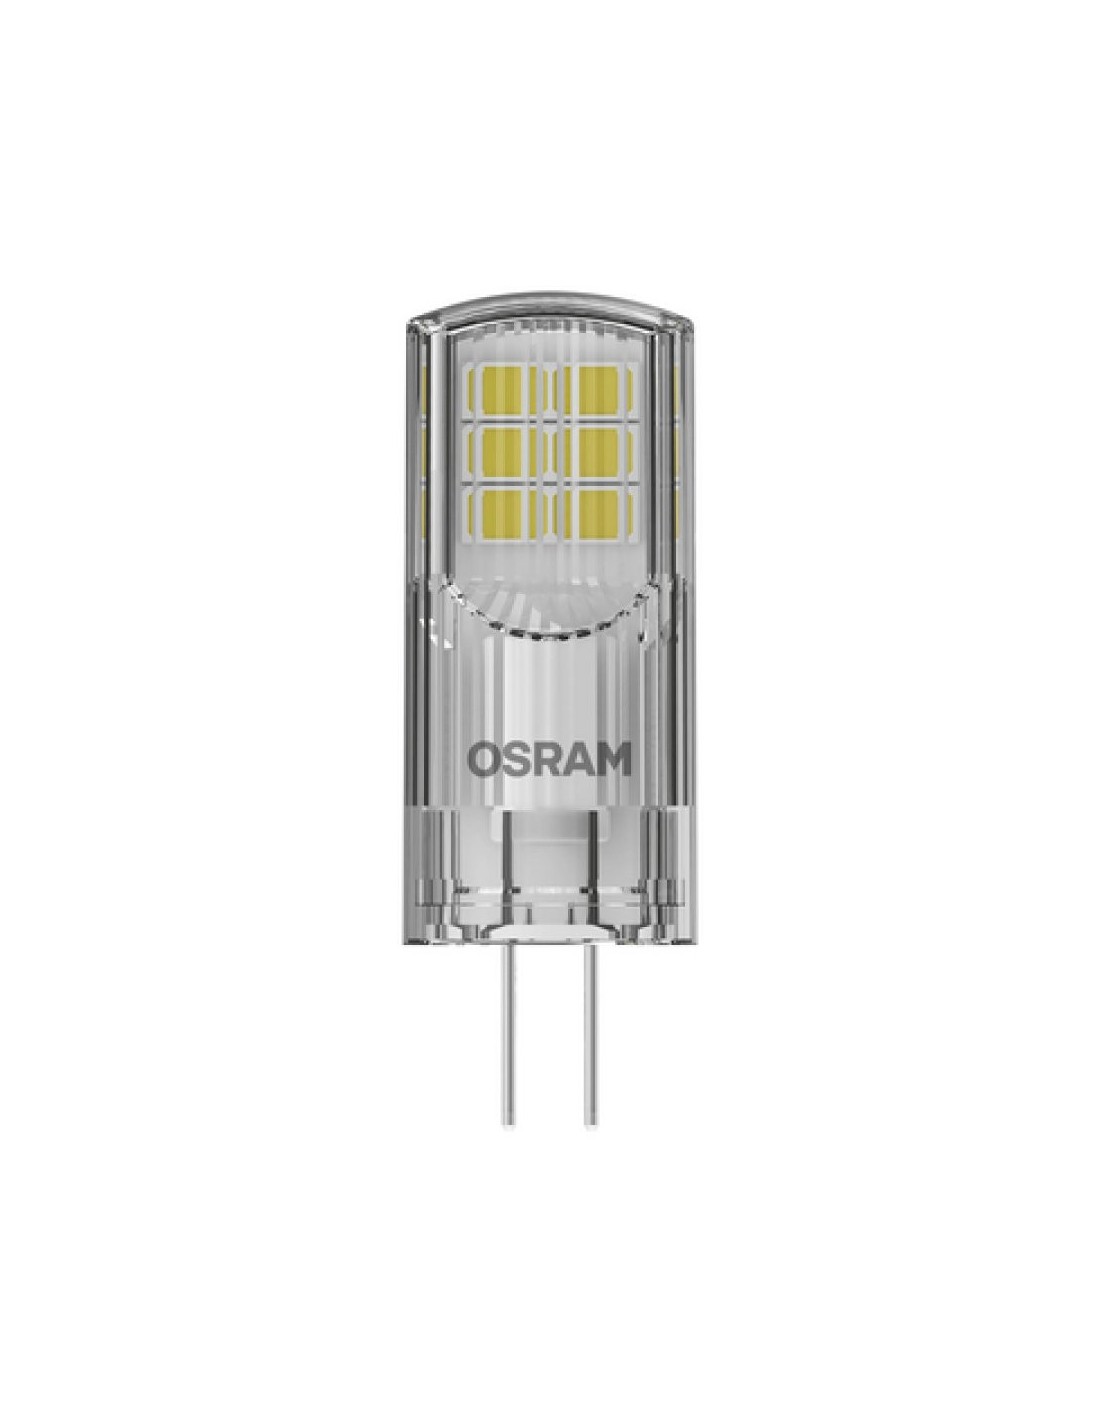 OSRAM PARATHOM PIN 30 LED 12V 2,6W 2700K G4